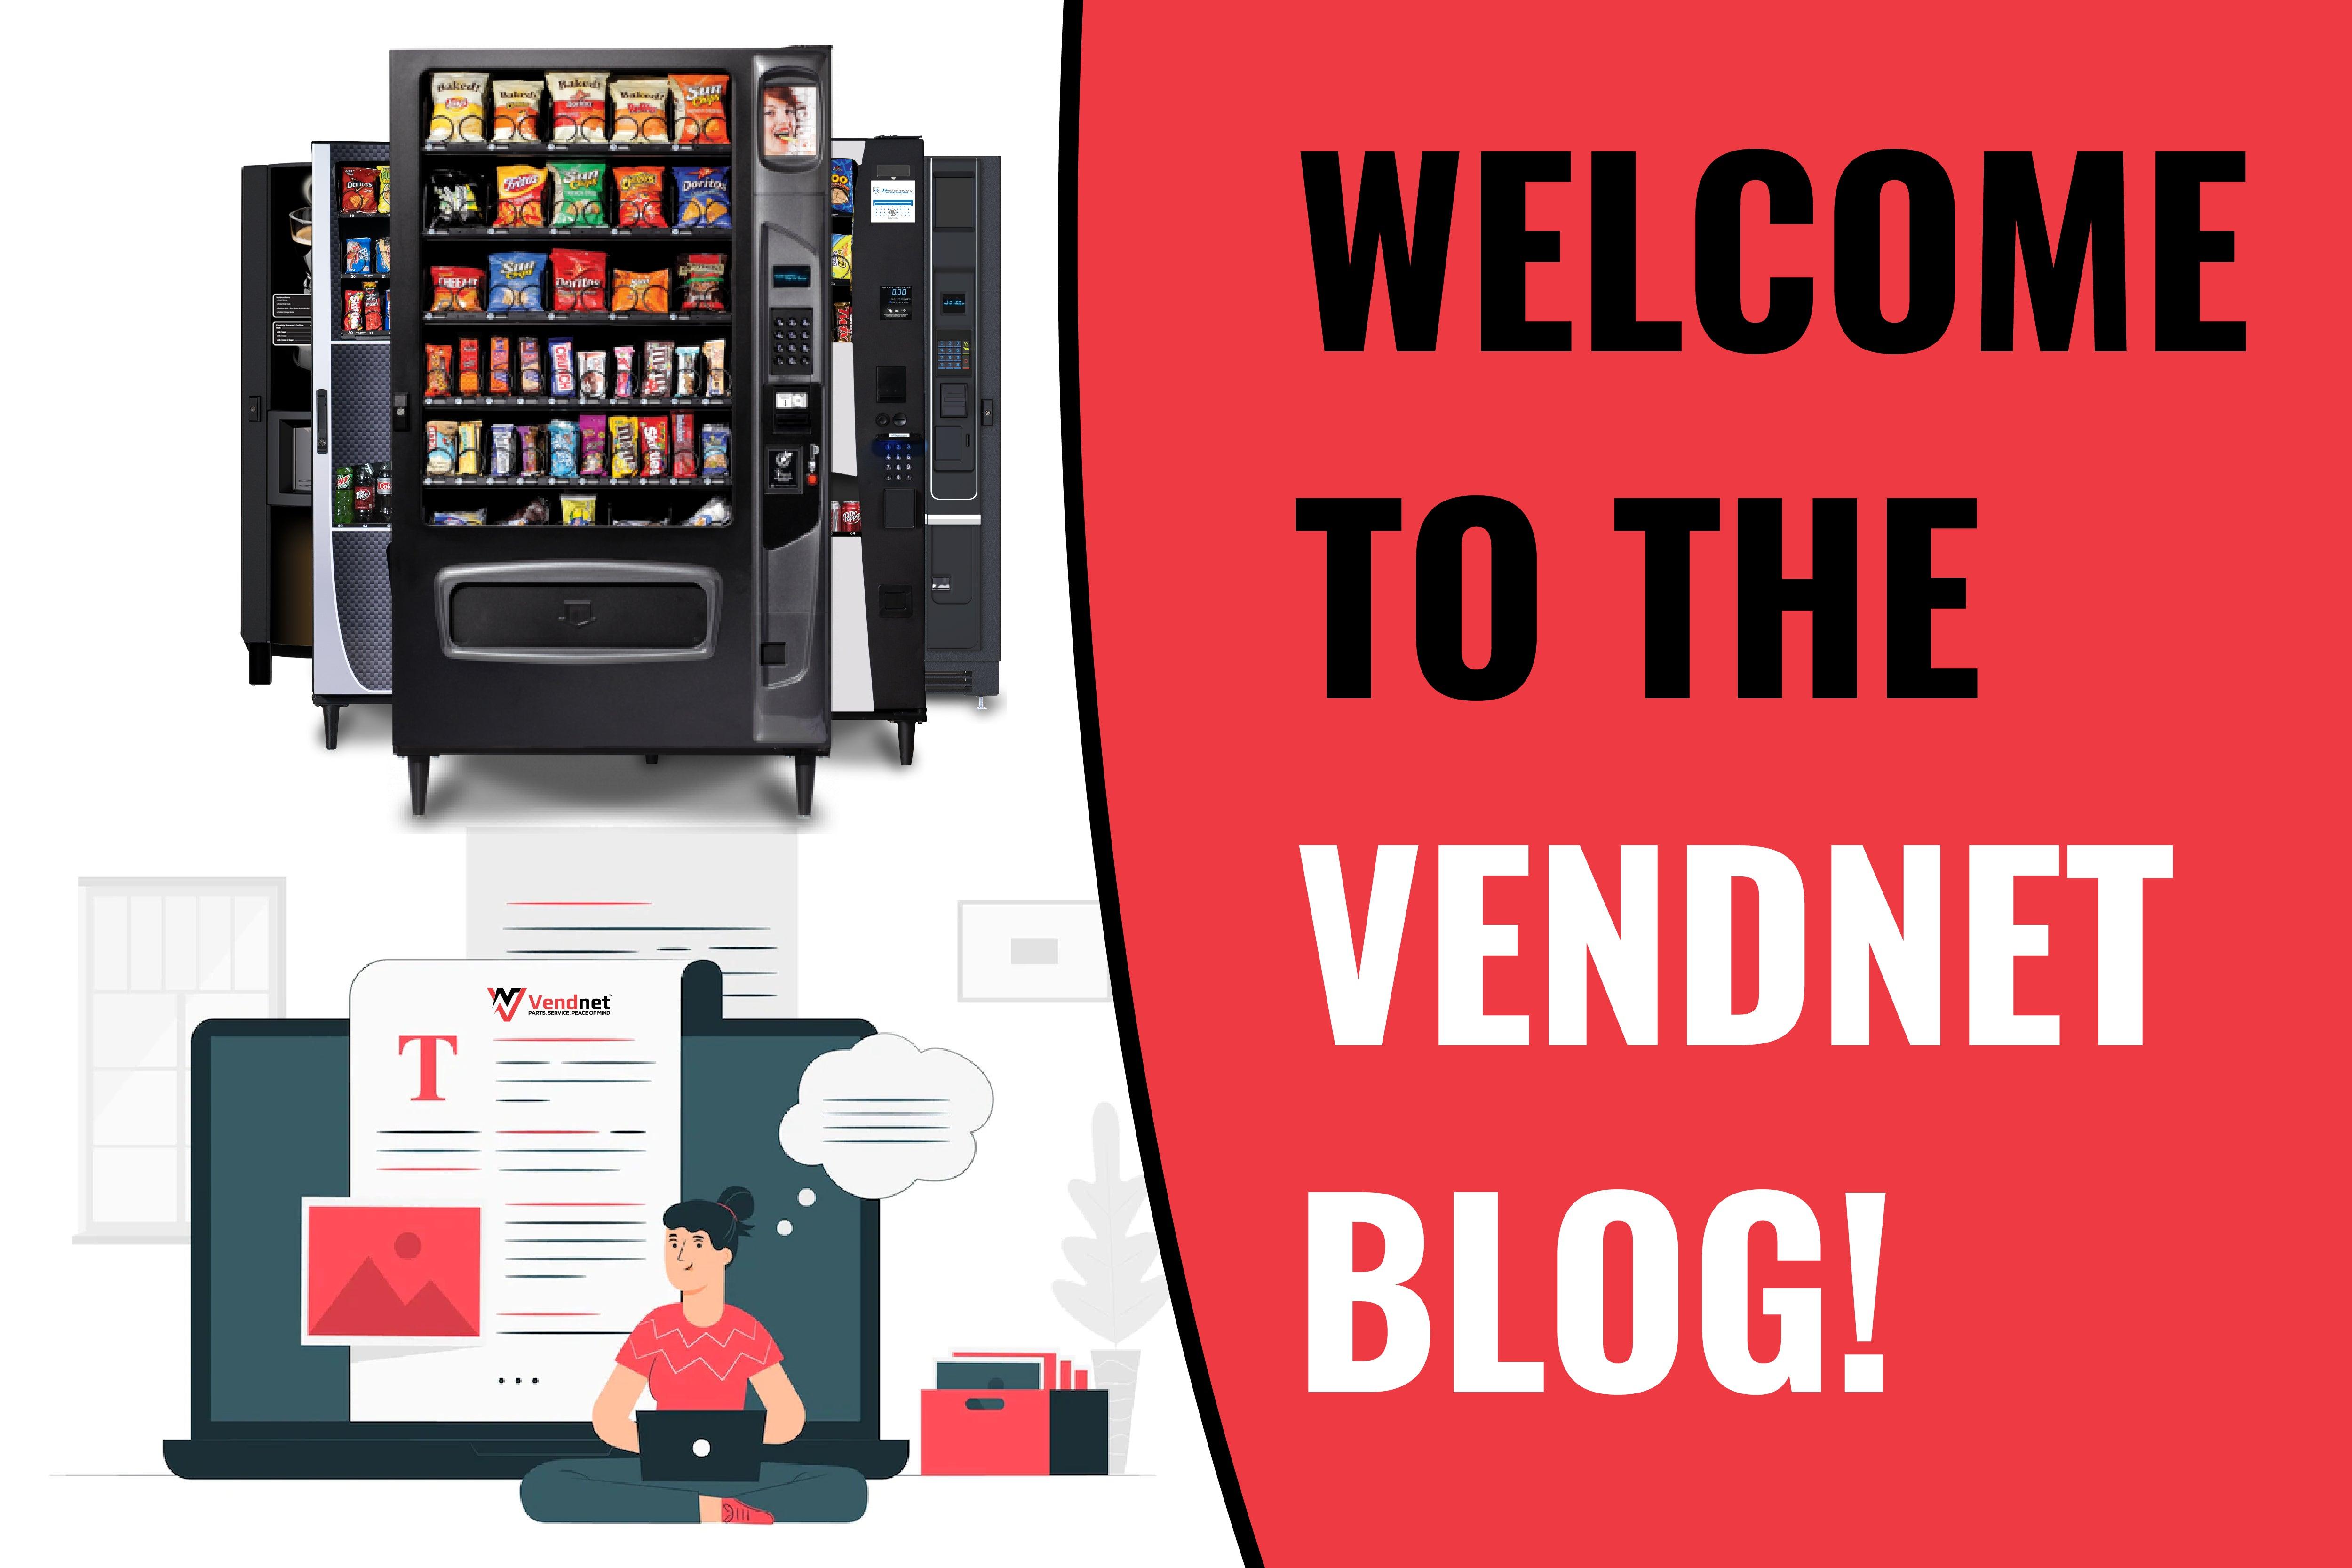 Vendnet: Welcome to the Vendnet Blog! - Vendnet